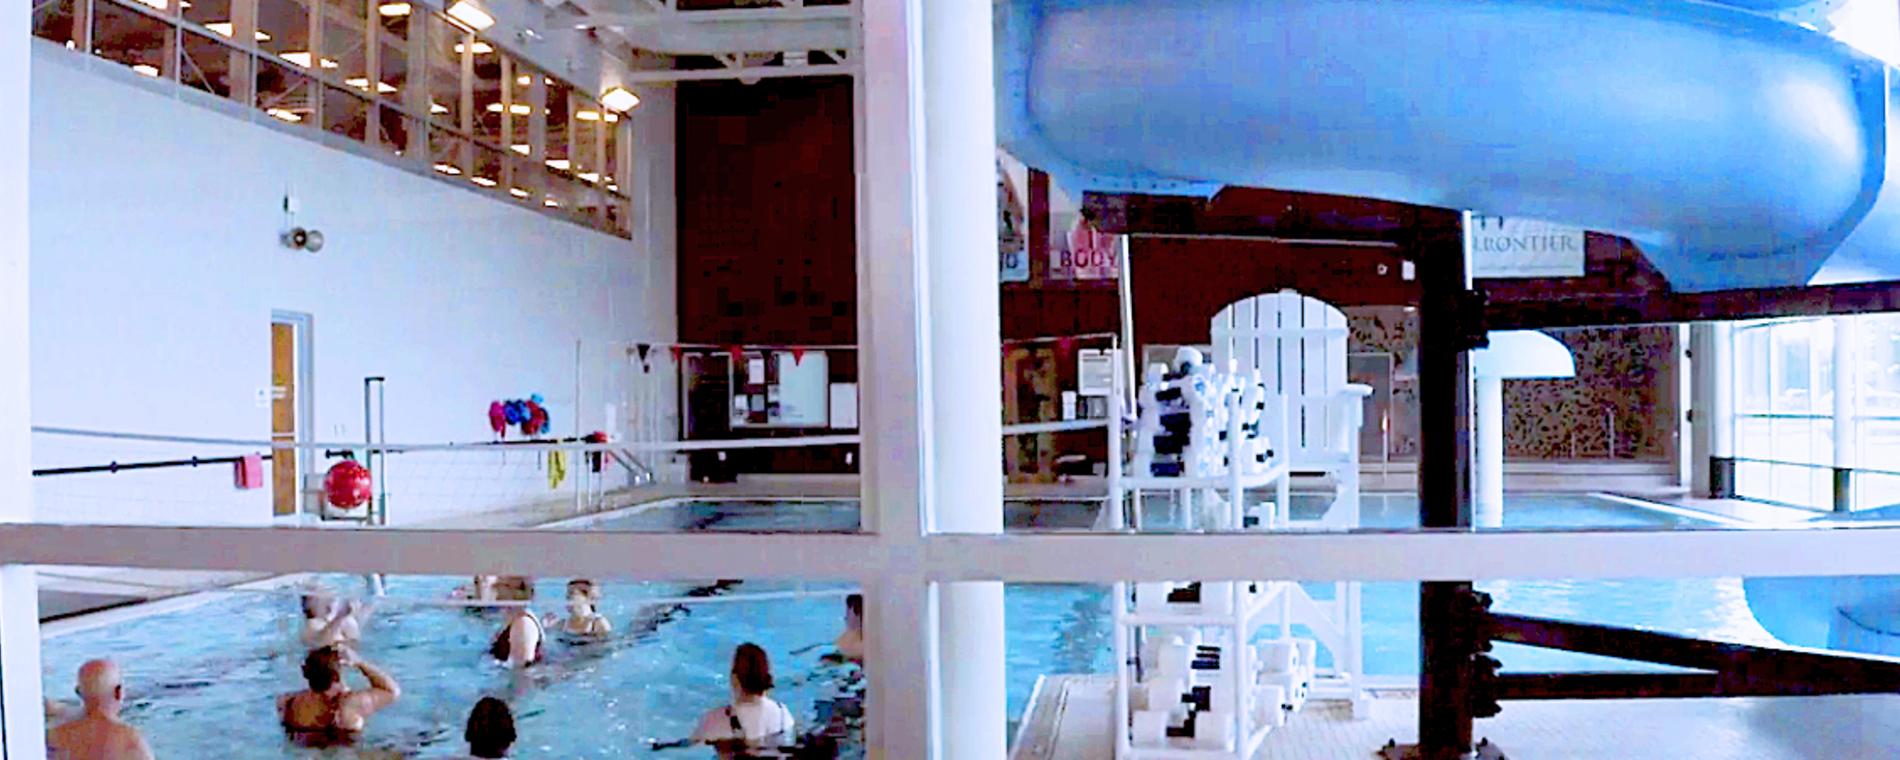 Pool El Dorado YMCA